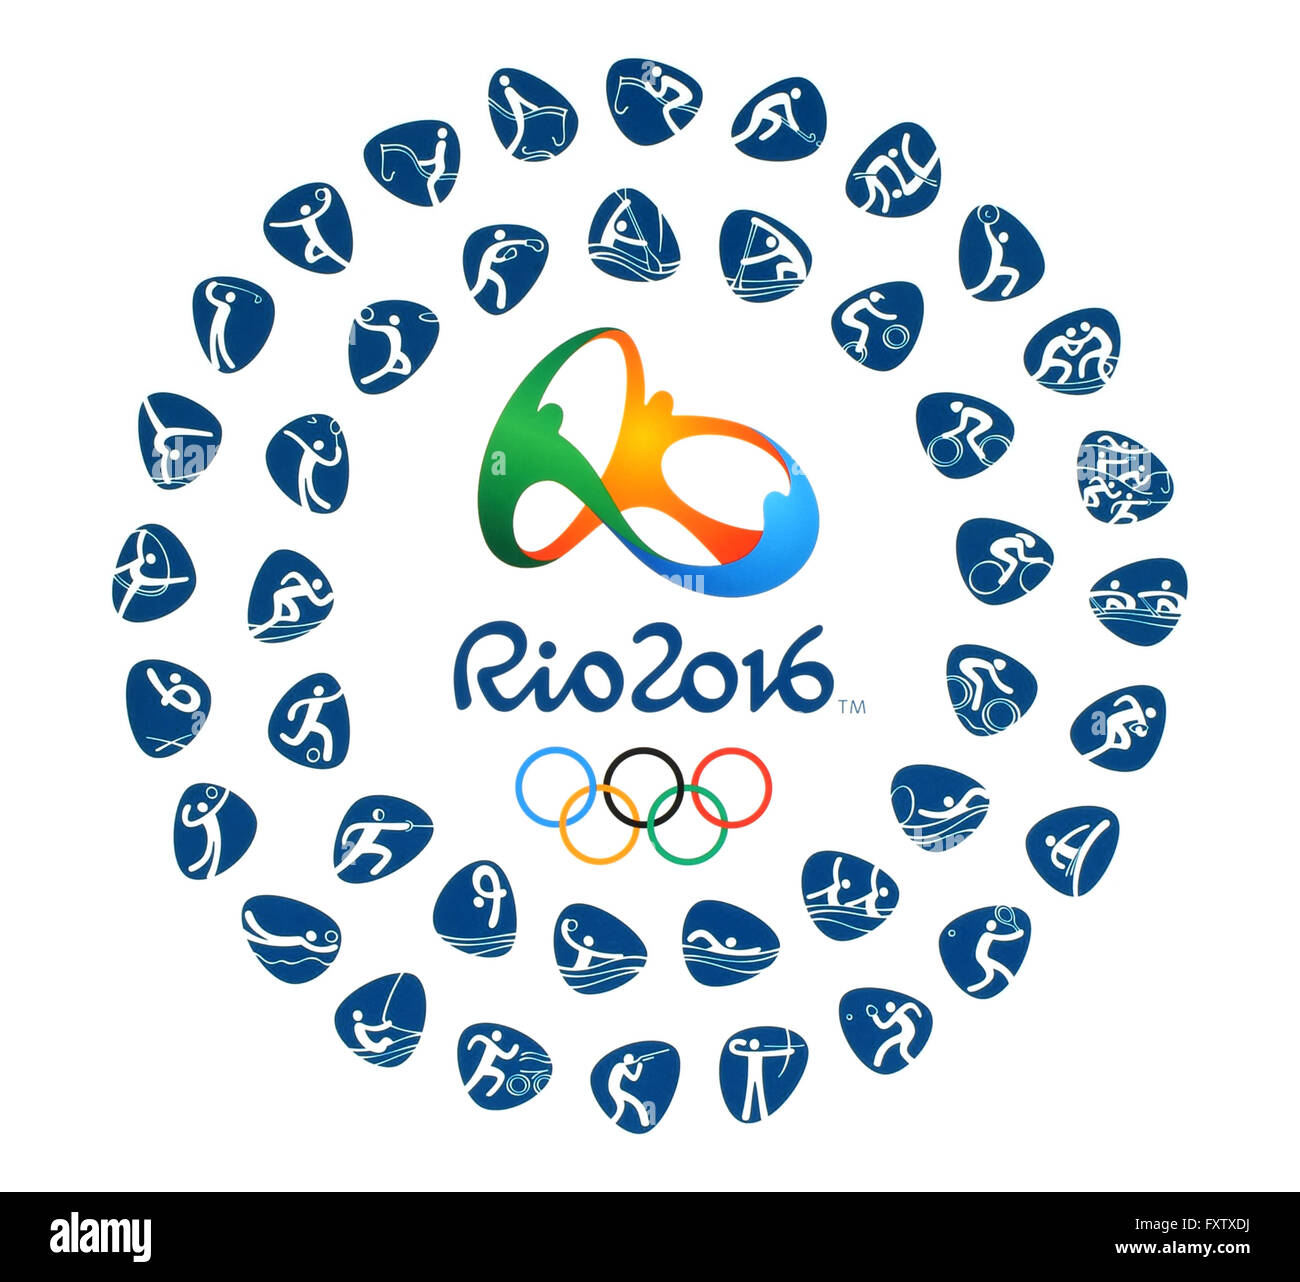 Kiev, Ucrania - Marzo 12, 2016: el logotipo oficial de los Juegos Olímpicos de Verano de 2016 con clases de deporte en Río de Janeiro, Brasil, el p. Foto de stock